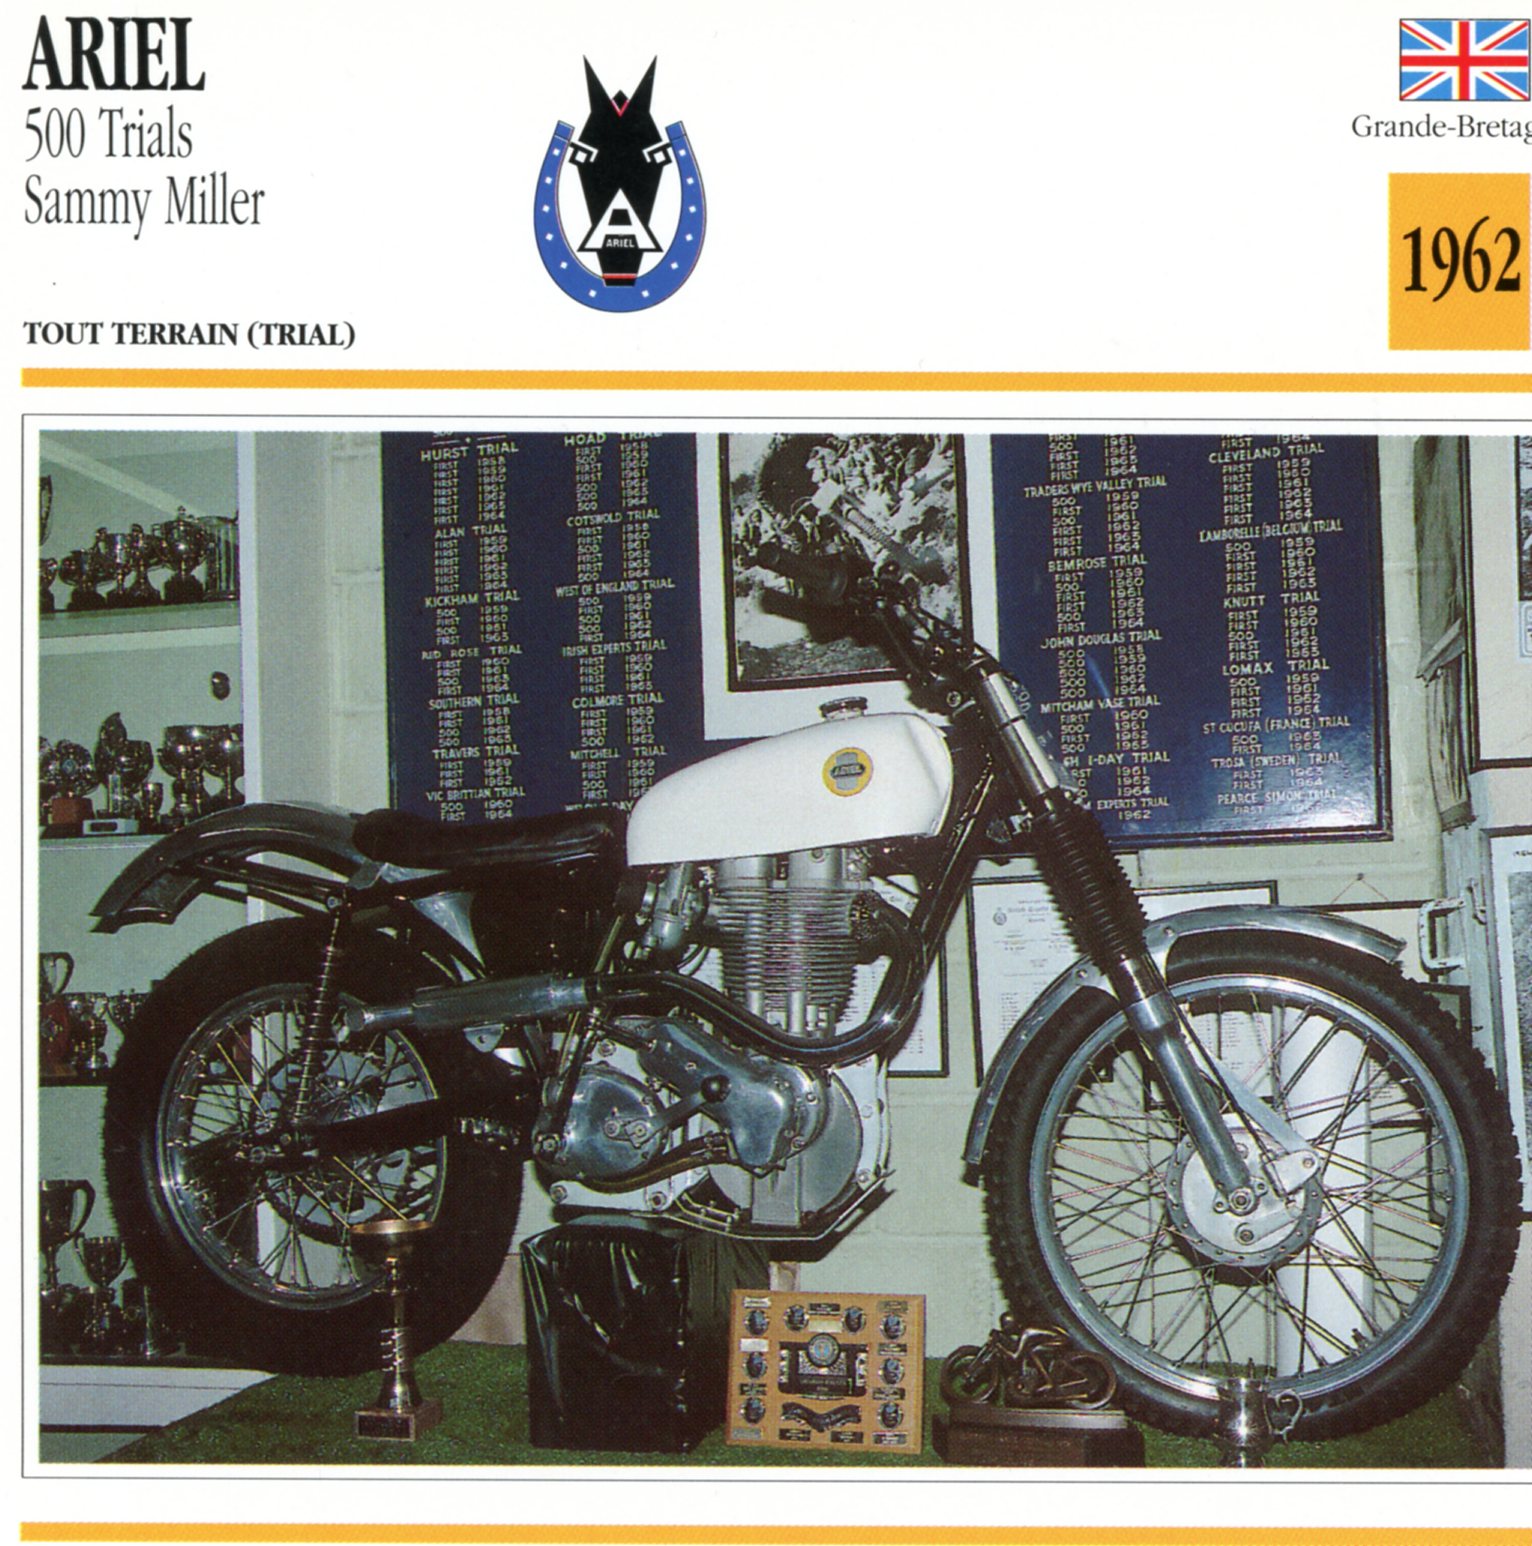 ARIEL 500 TRIALS SAMMY MILLER 1962 - CARTE CARD FICHE MOTO CARACTERISTIQUES